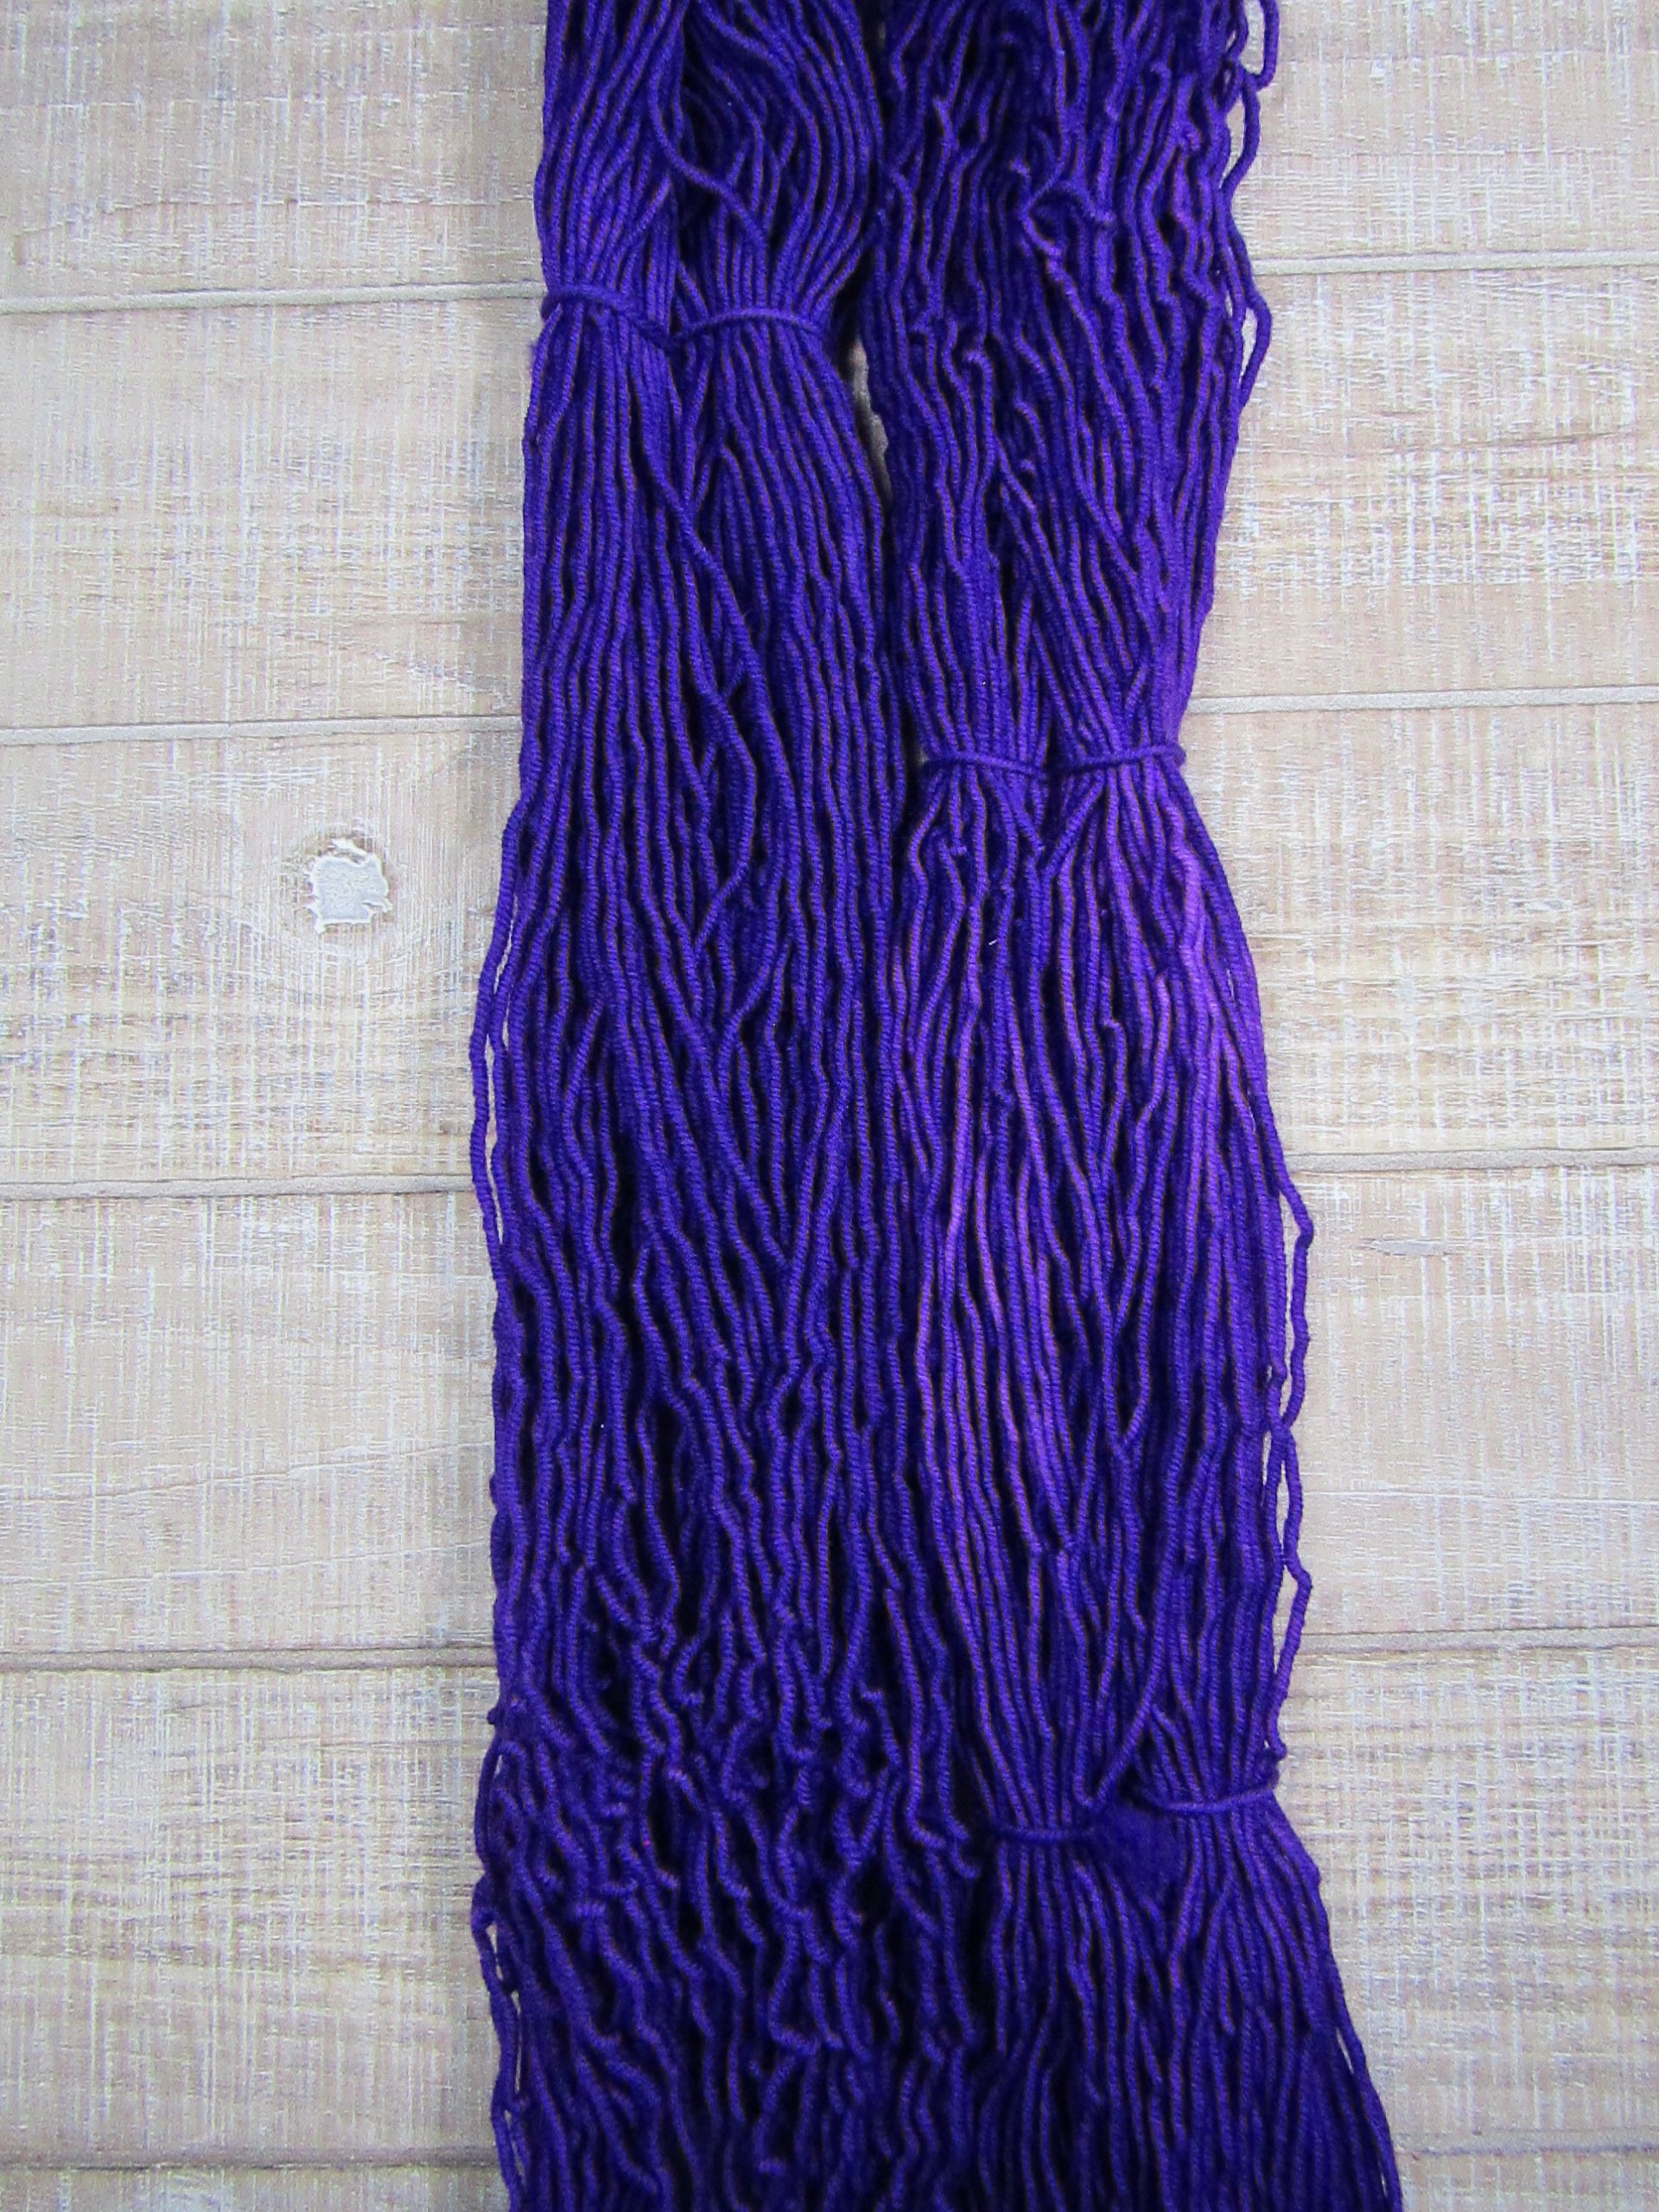 Hand-dyed yarn - Grape Merino/Cashstyle nylon worsted weight yarn in grape purple